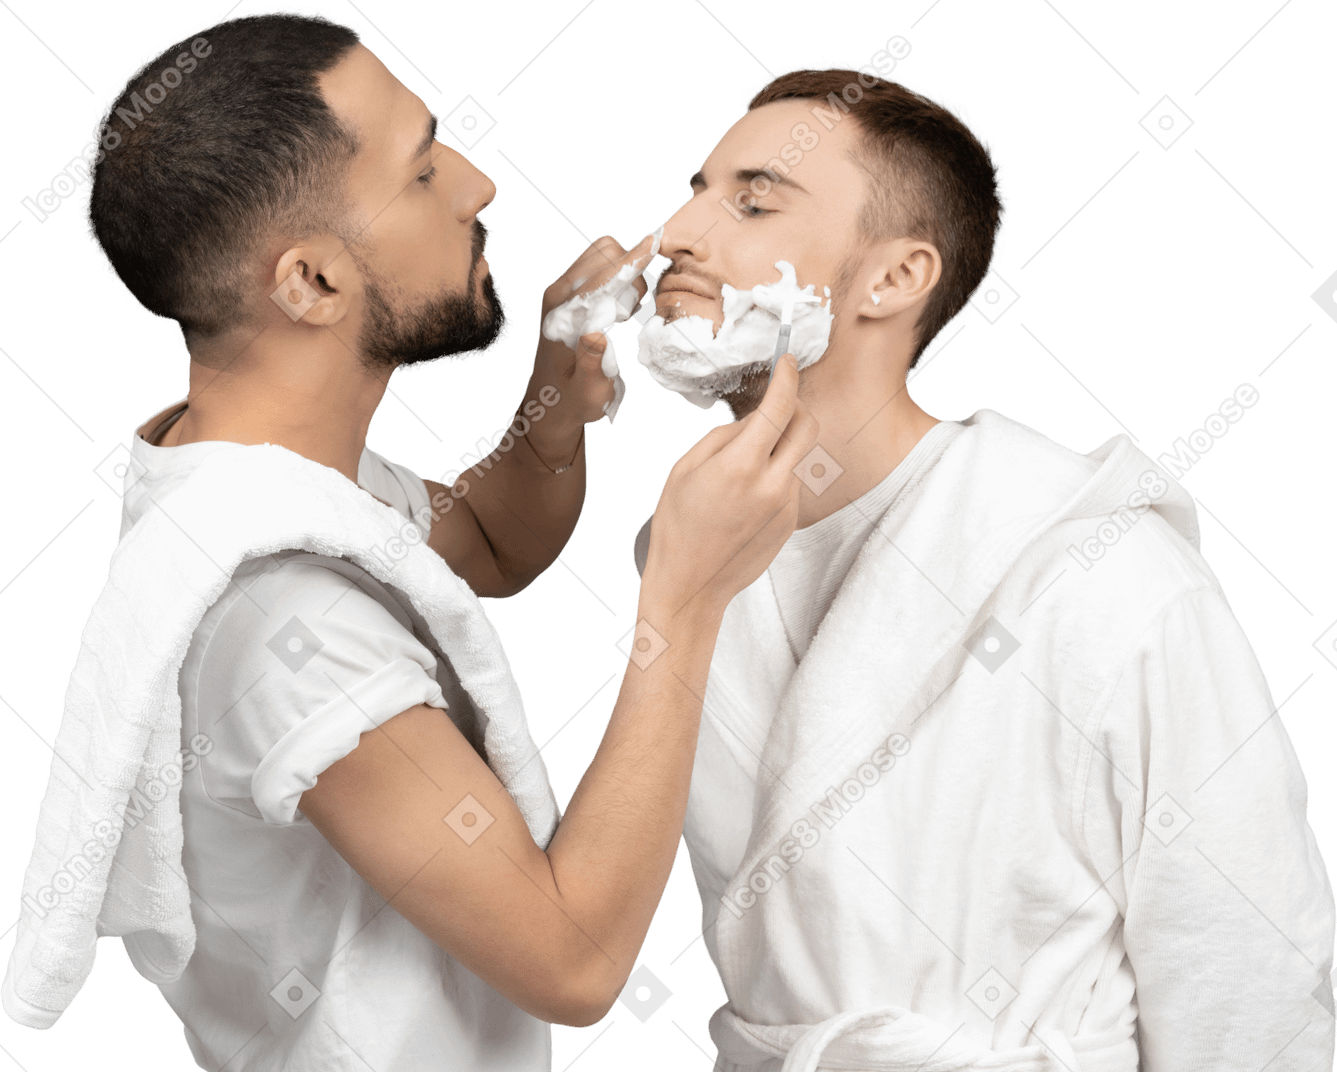 年轻的白人男子小心地给他的伴侣剃须，并在他的鼻子上涂上剃须泡沫